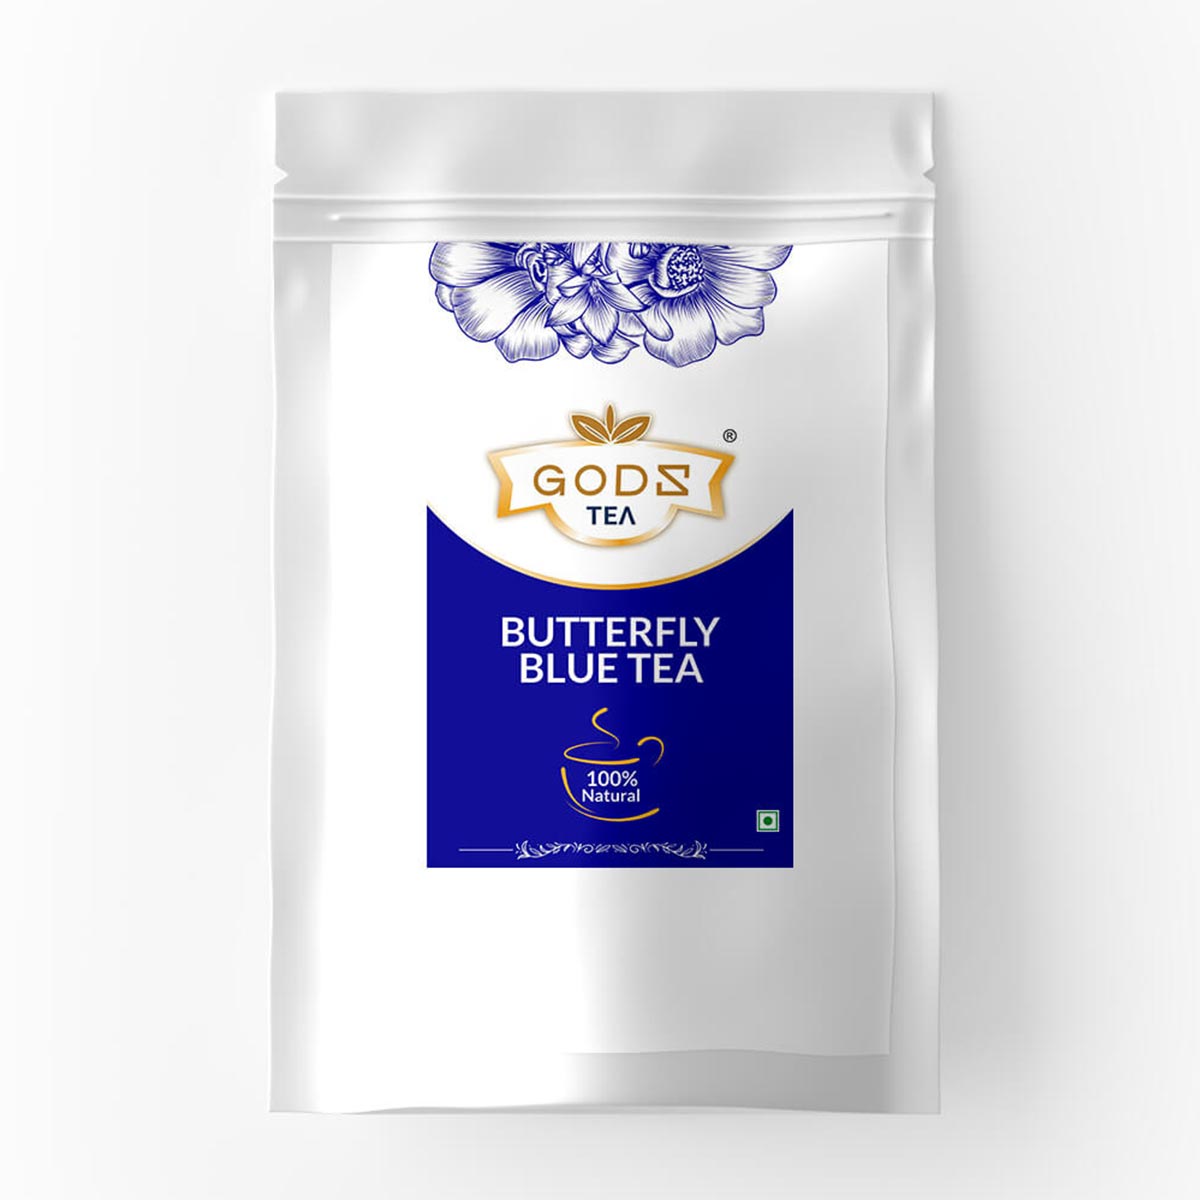 Butterfly Blue Tea Buy Chai Online